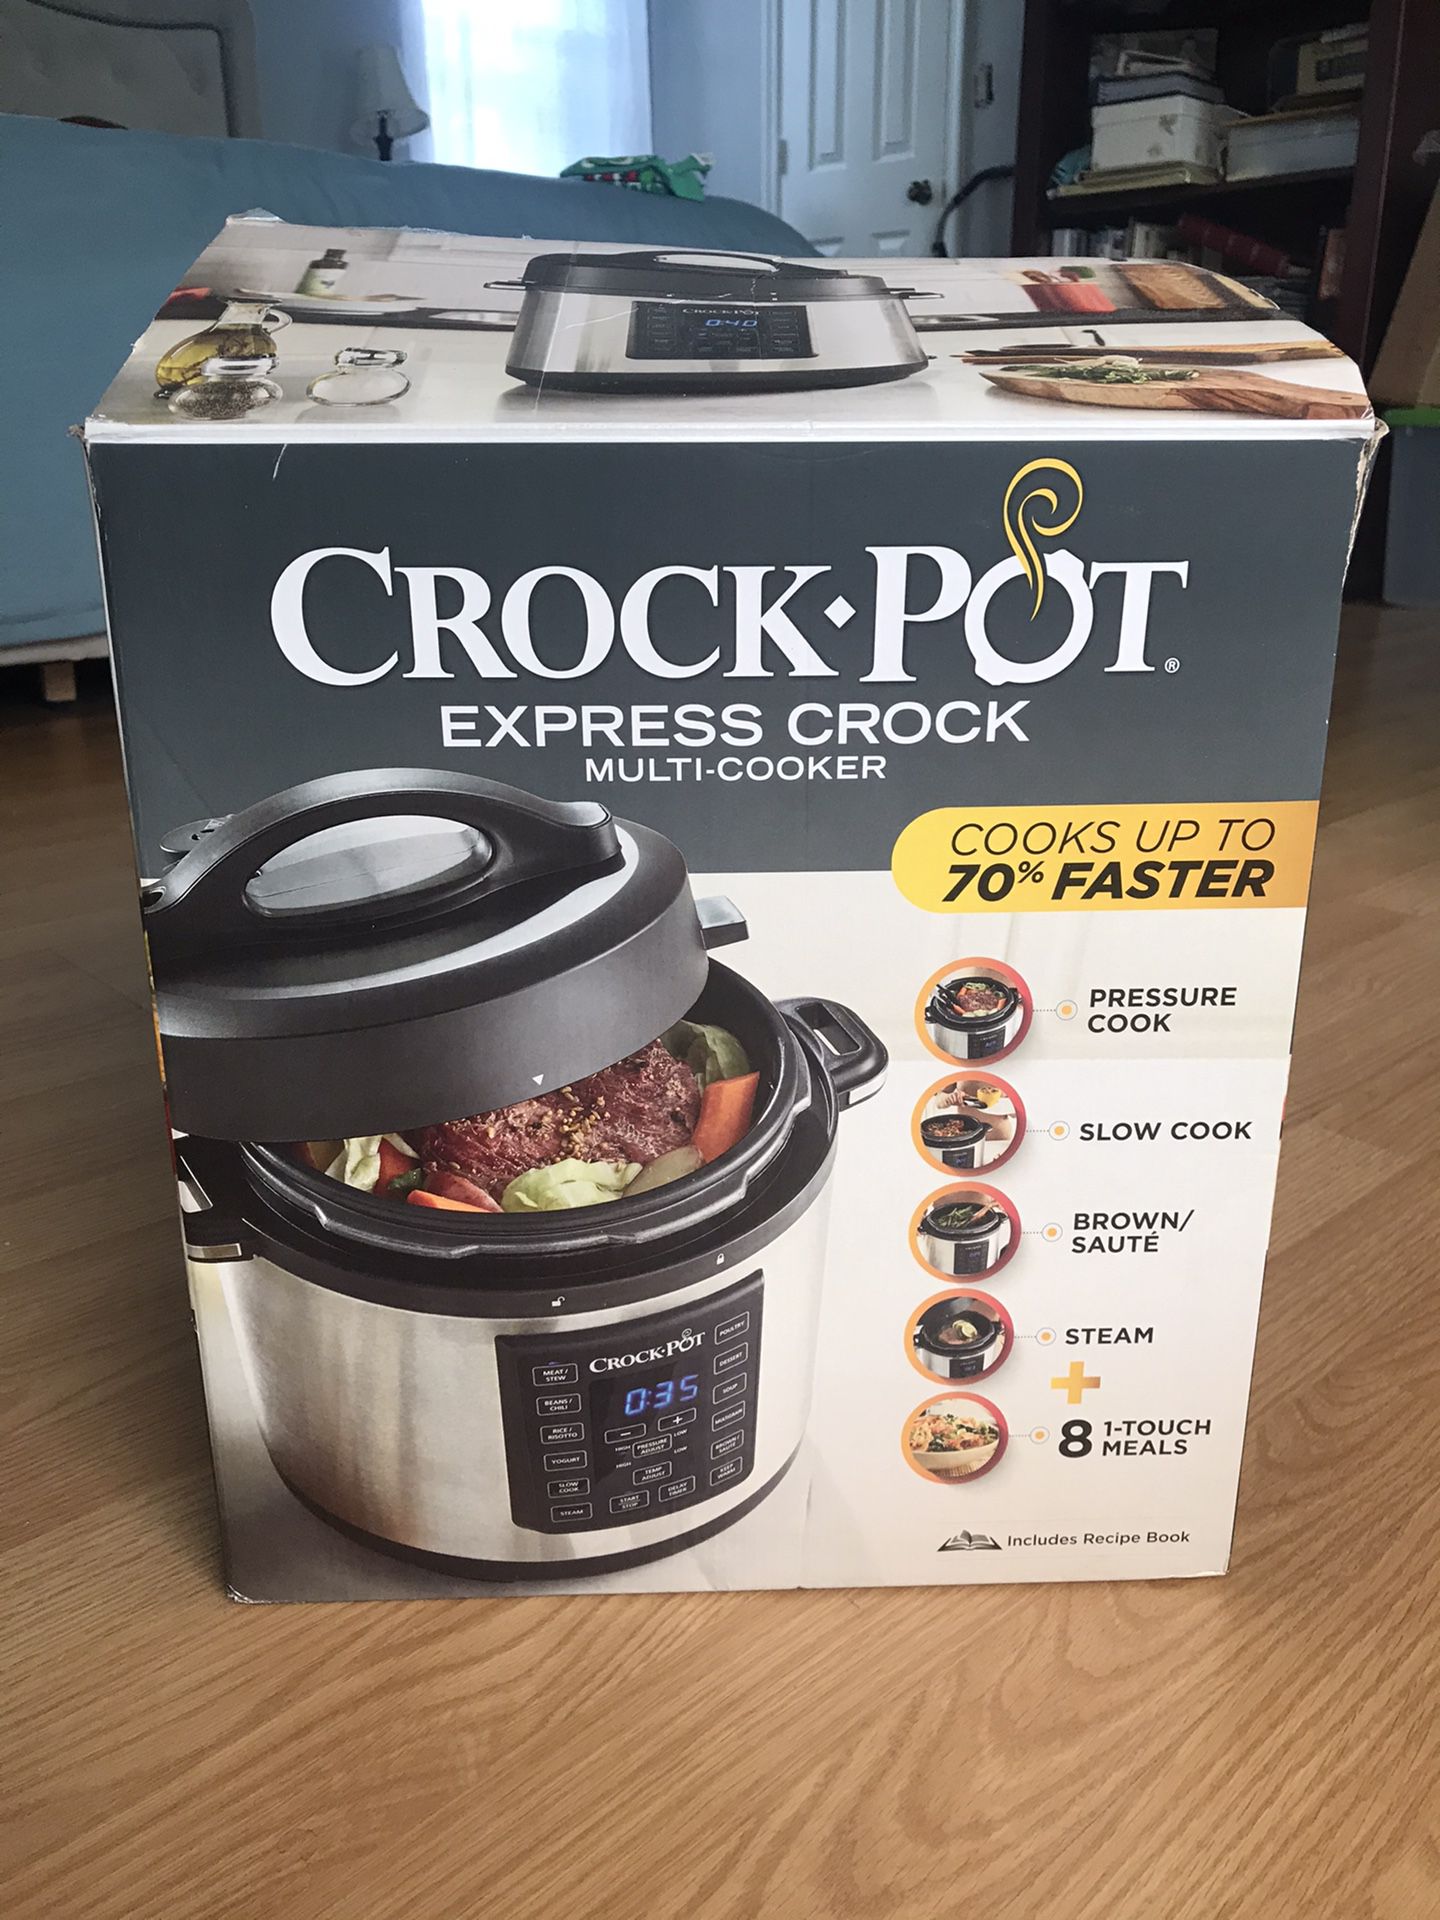 NEW Crock Pot Pressure Cooker, Slow Cooker, Steamer